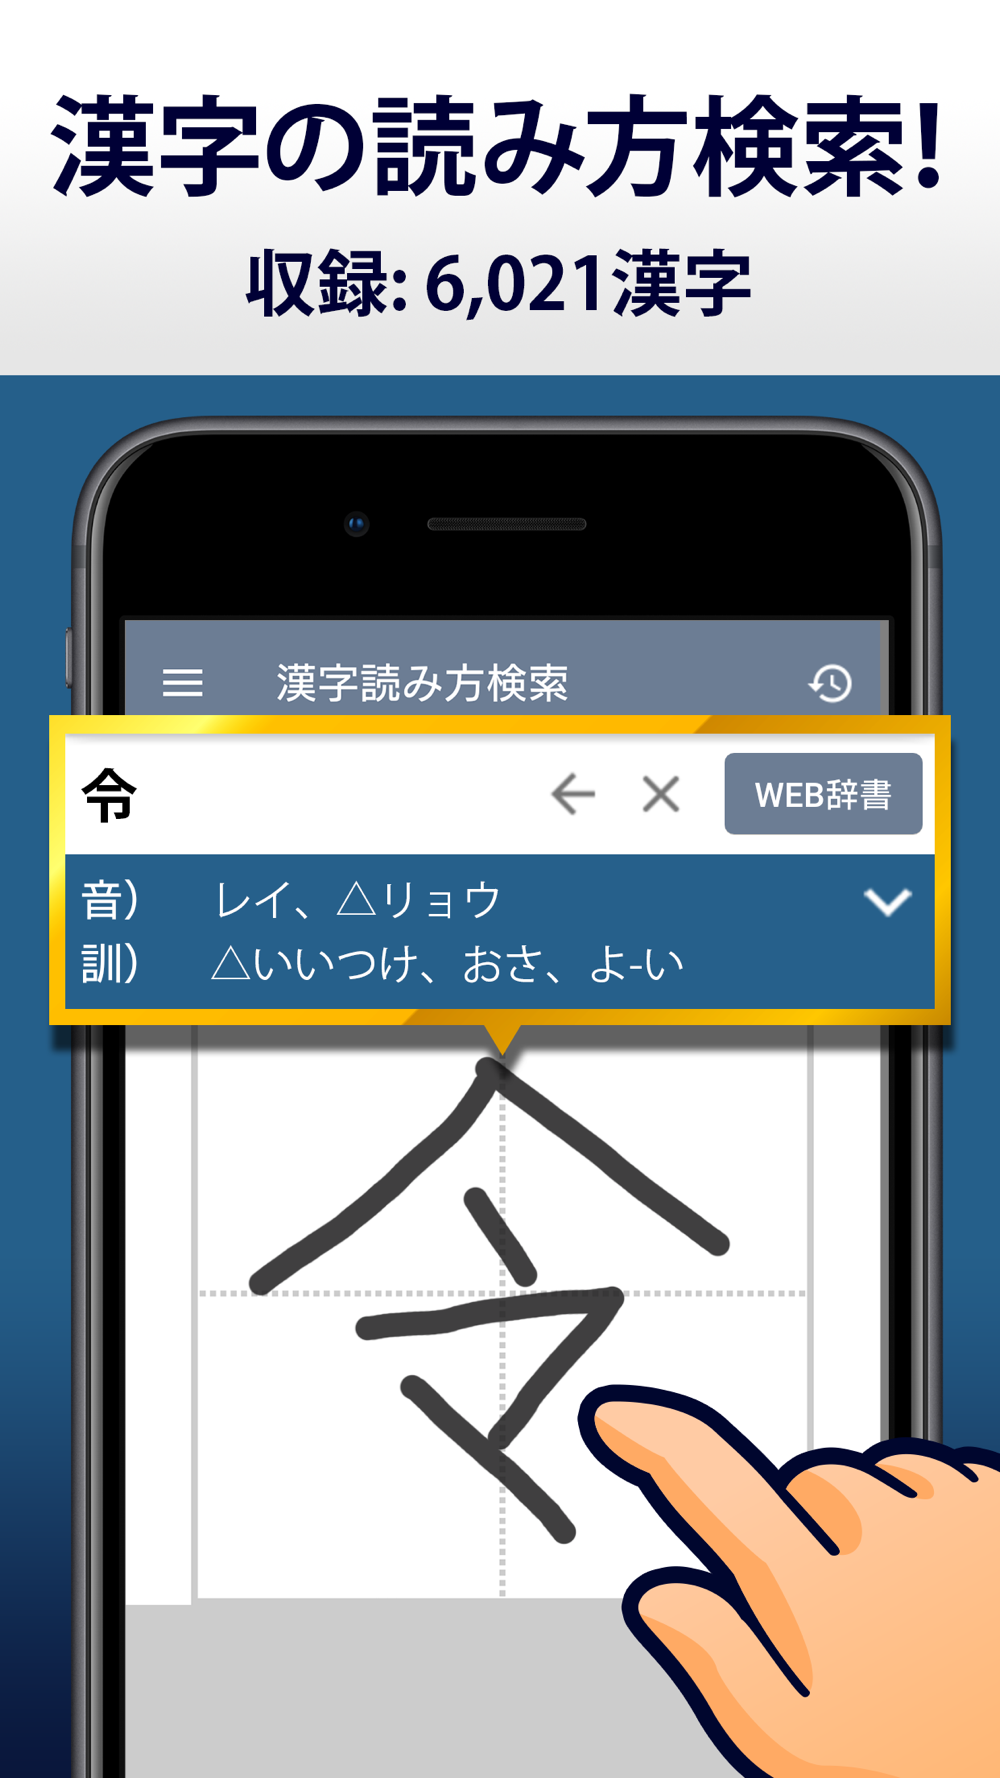 漢字読み方 漢字検索 手書き漢字辞典 Free Download App For Iphone Steprimo Com